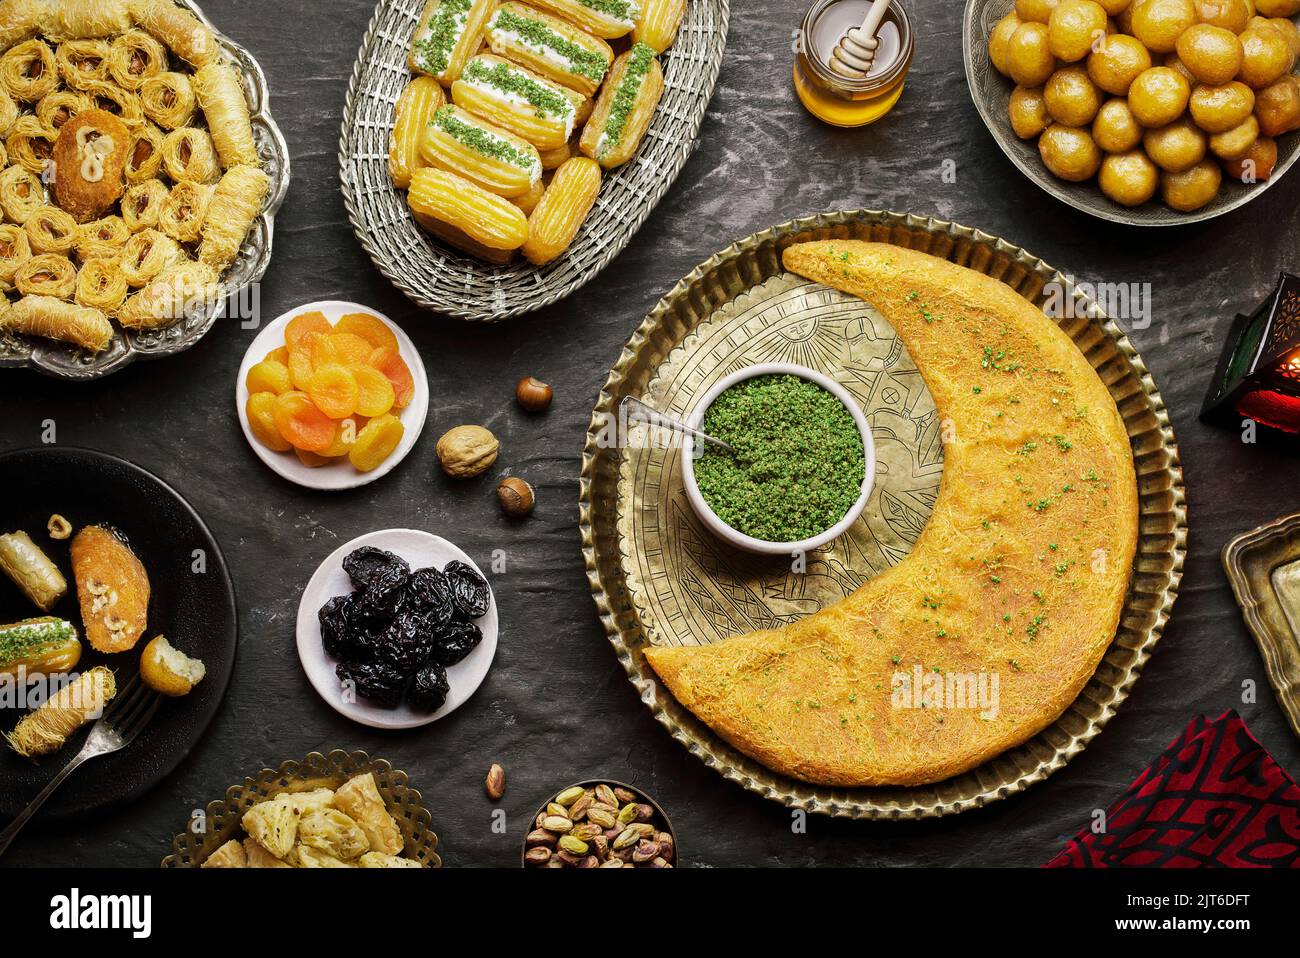 Cuisine arabe : desserts du Moyen-Orient. Une délicieuse collection de desserts traditionnels du Ramadan. Servi avec des noix savoureuses, des fruits secs et du sirop de miel. Banque D'Images